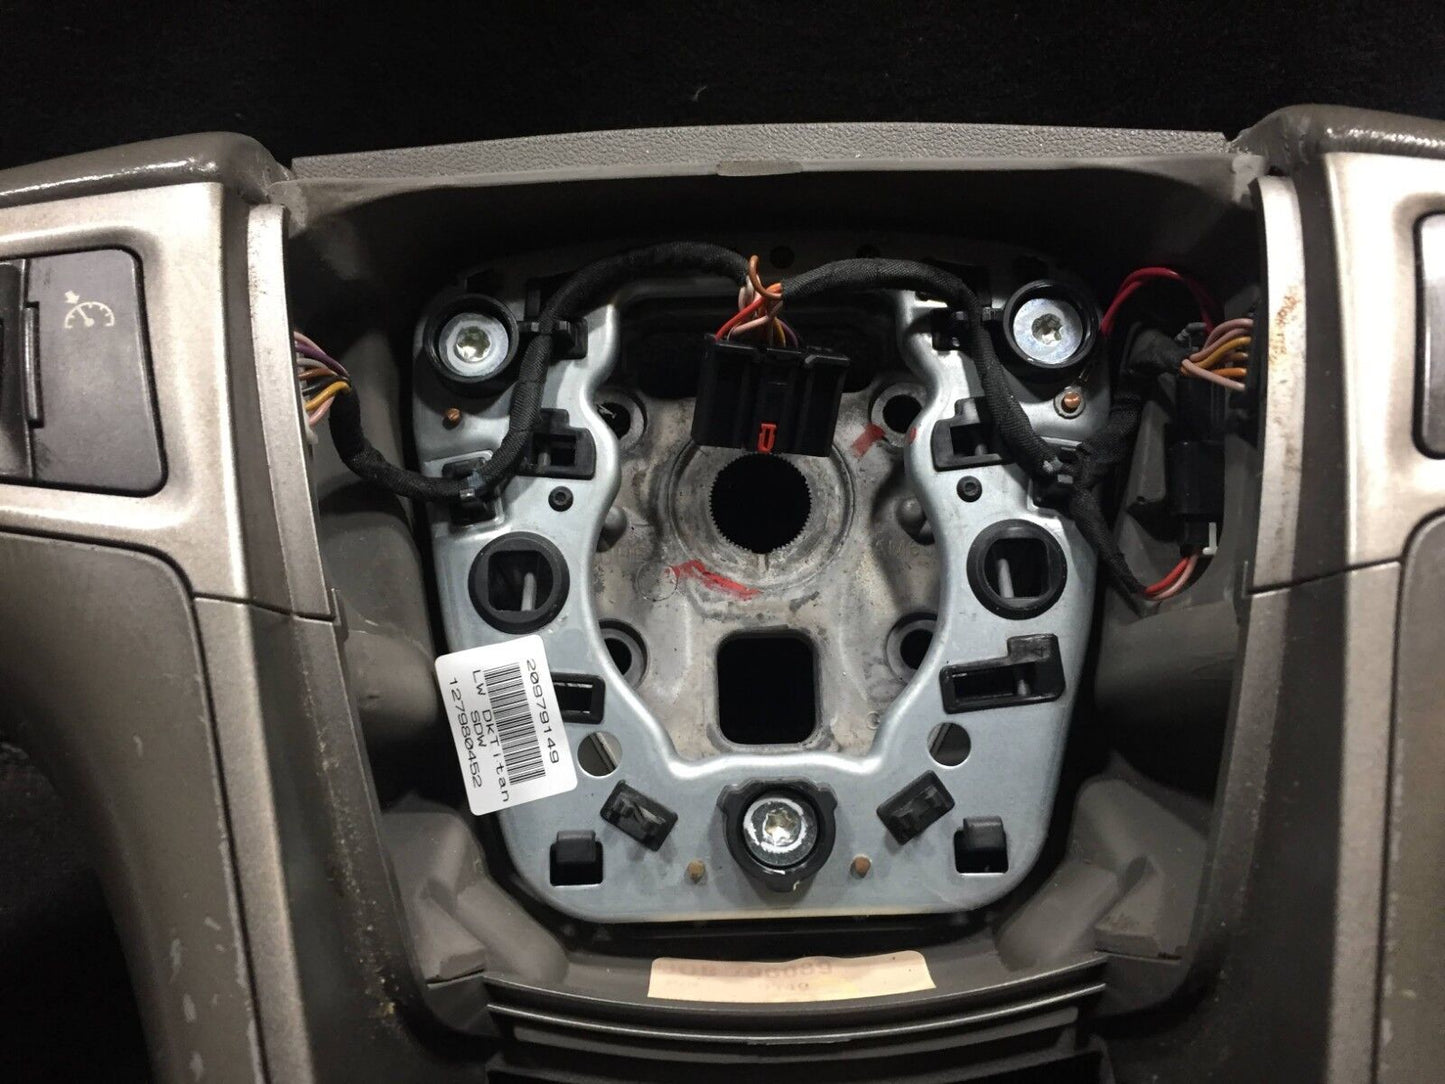 11 12 13 Buick Lacrosse Steering Wheel W/ Control Button OEM D29